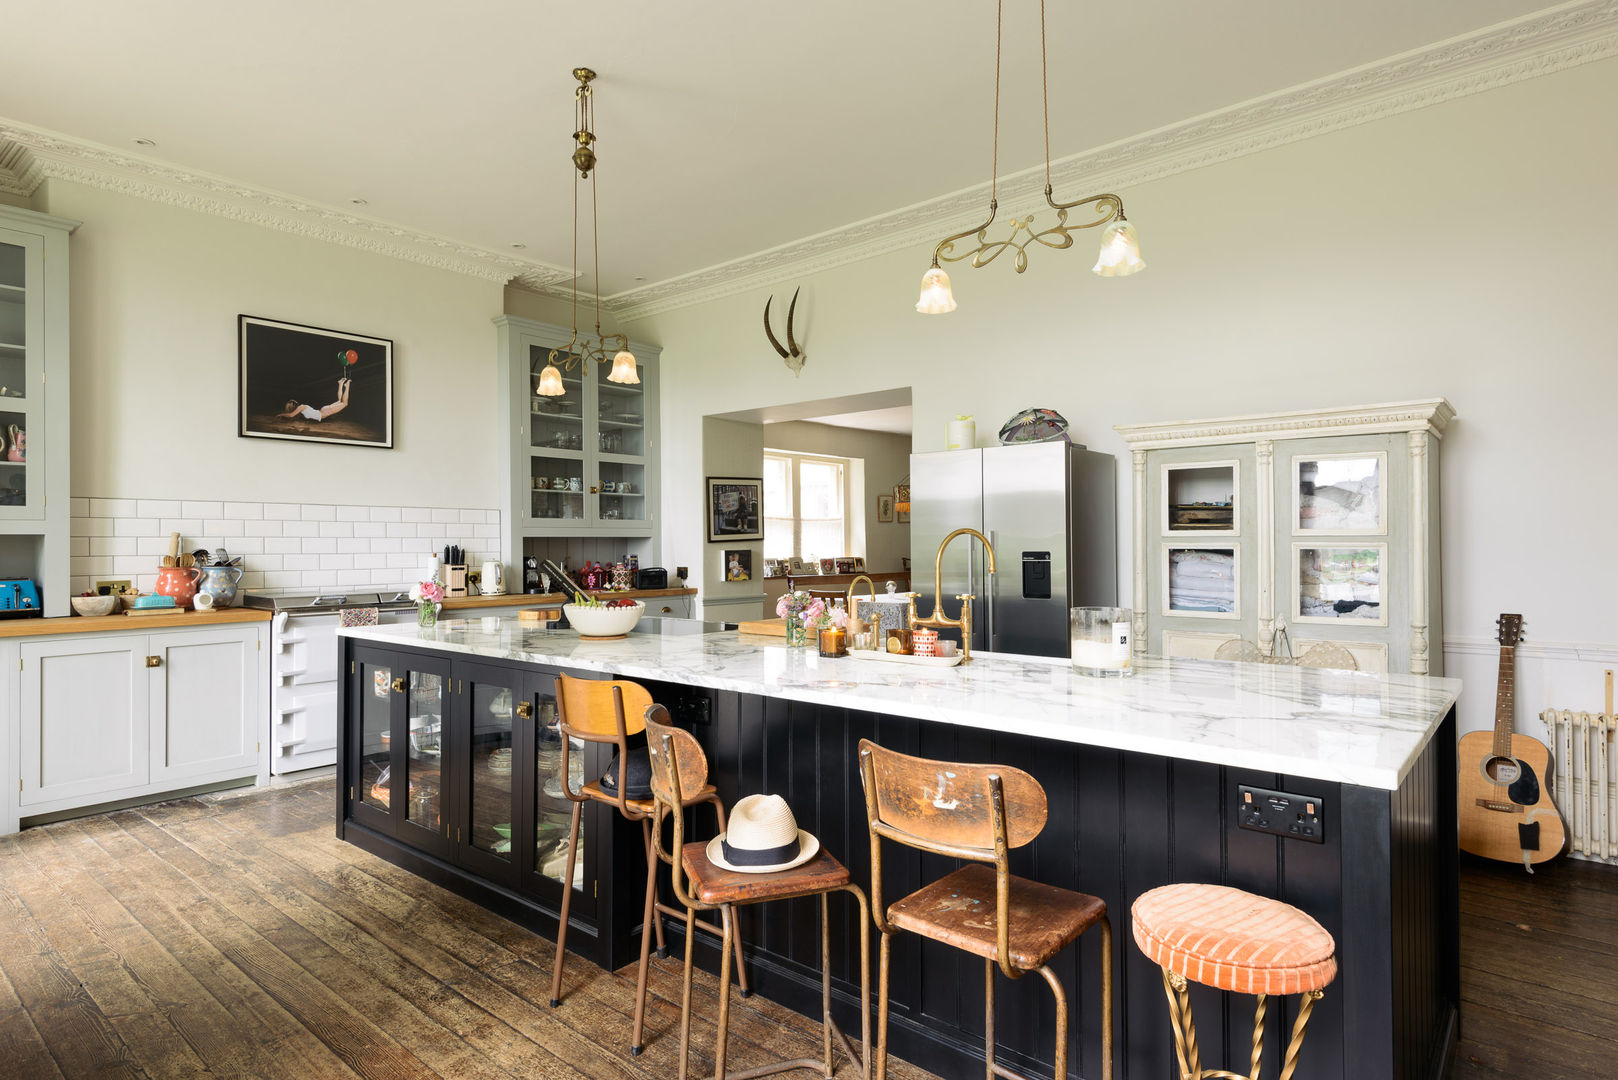 The Frome Kitchen by deVOL deVOL Kitchens Kitchen kitchen island,classic,eclectic,dark kitchens,marble,worktop